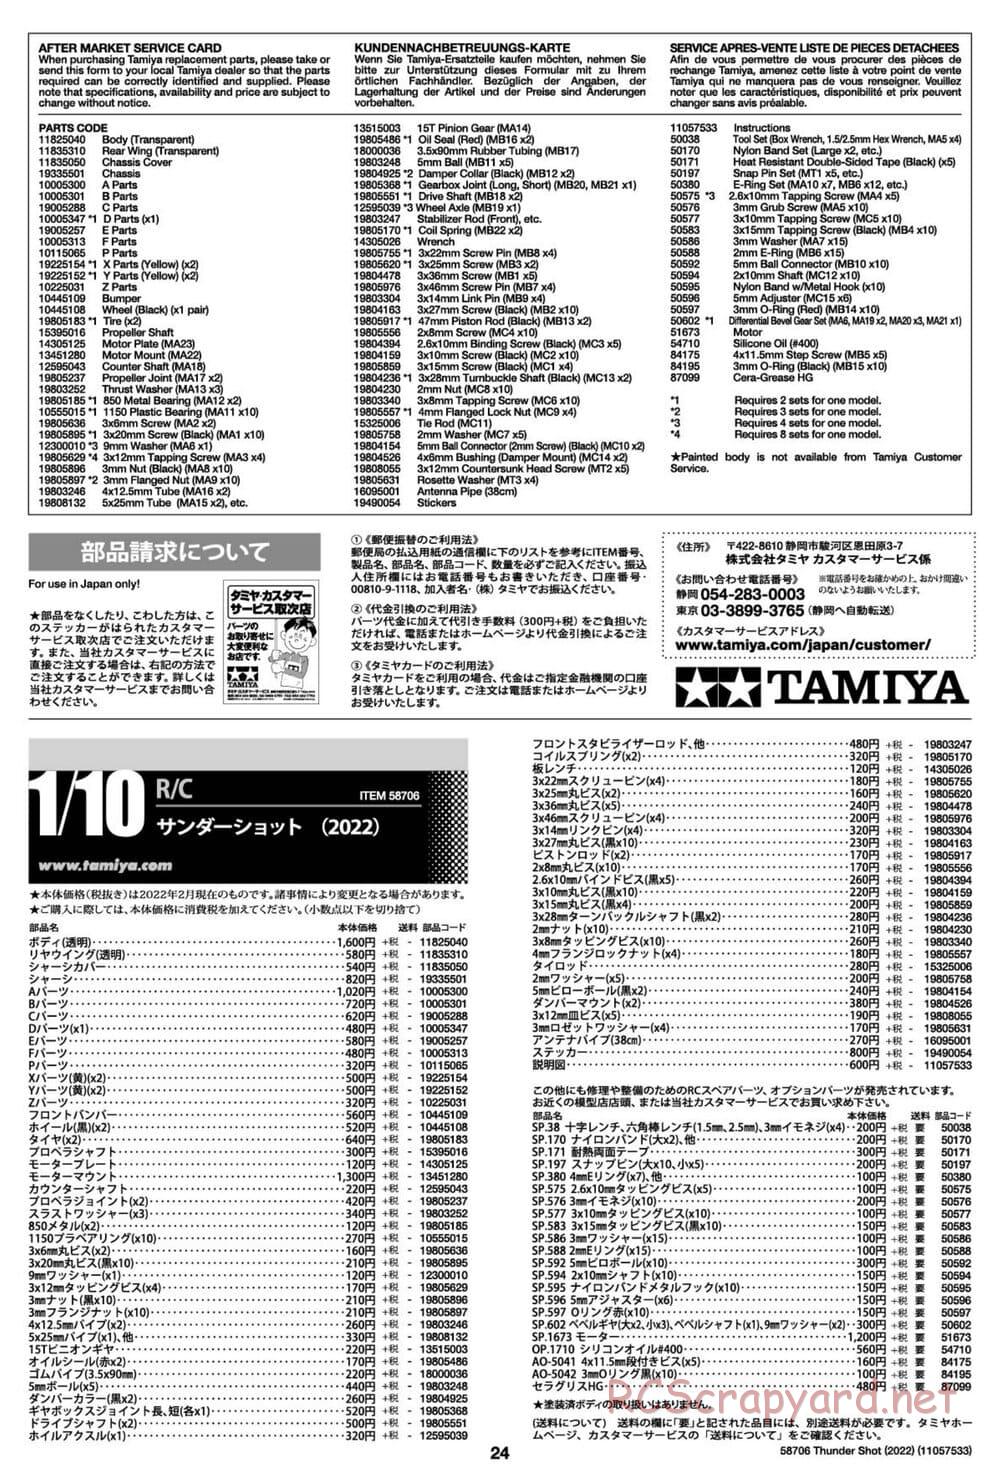 Tamiya - Thunder Shot (2022) - TS1/TS2 Chassis - Manual - Page 24